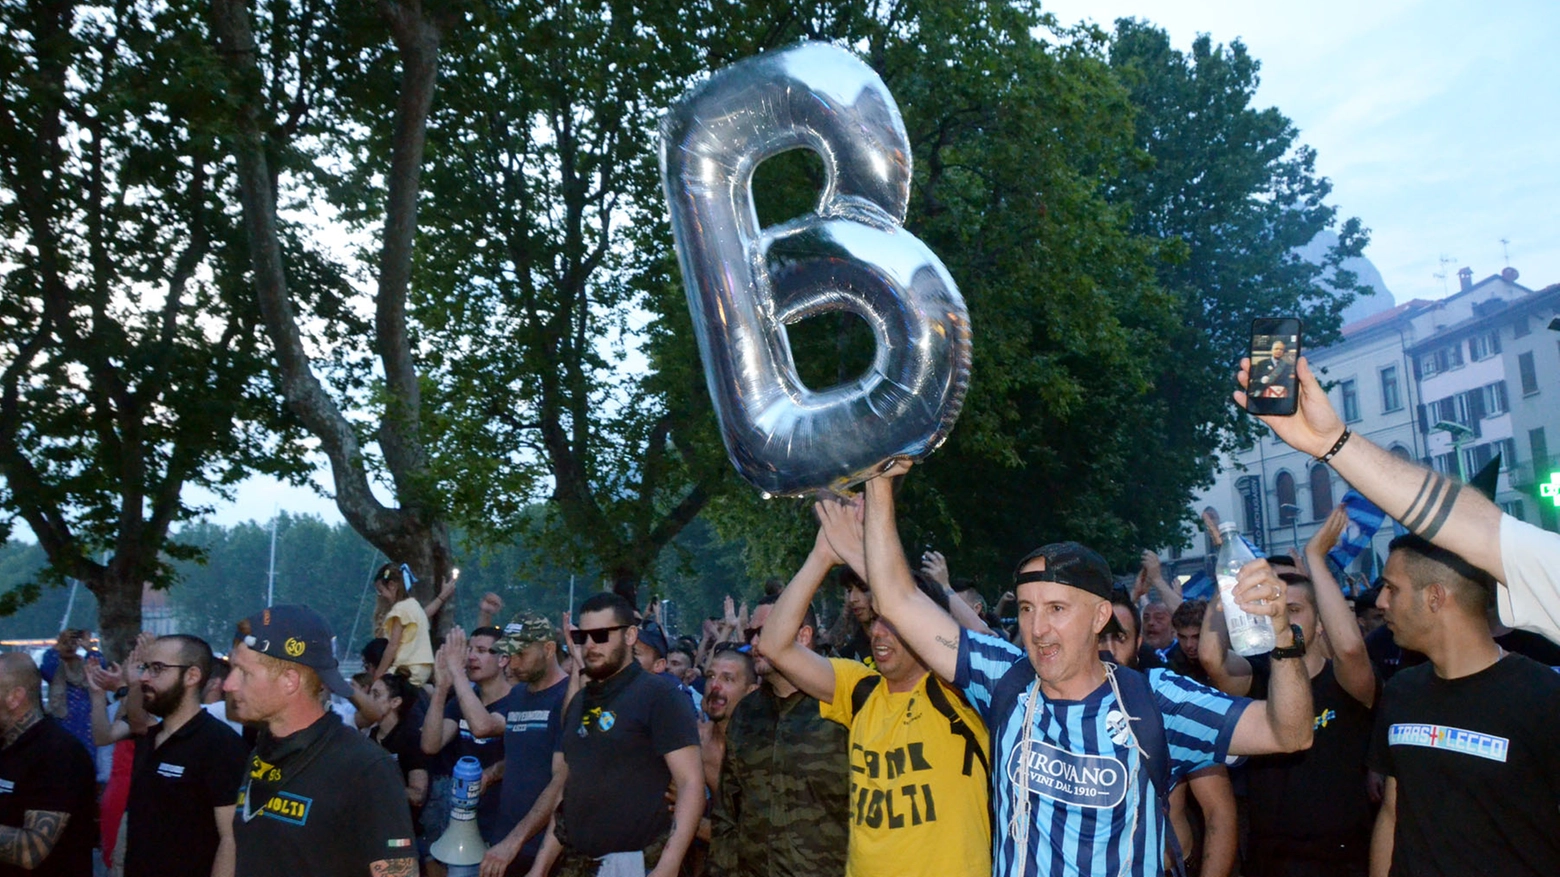 E' domenica 18 giugno e i tifosi festeggiano in città la promozione della squadra in serie B dopo 50 anni